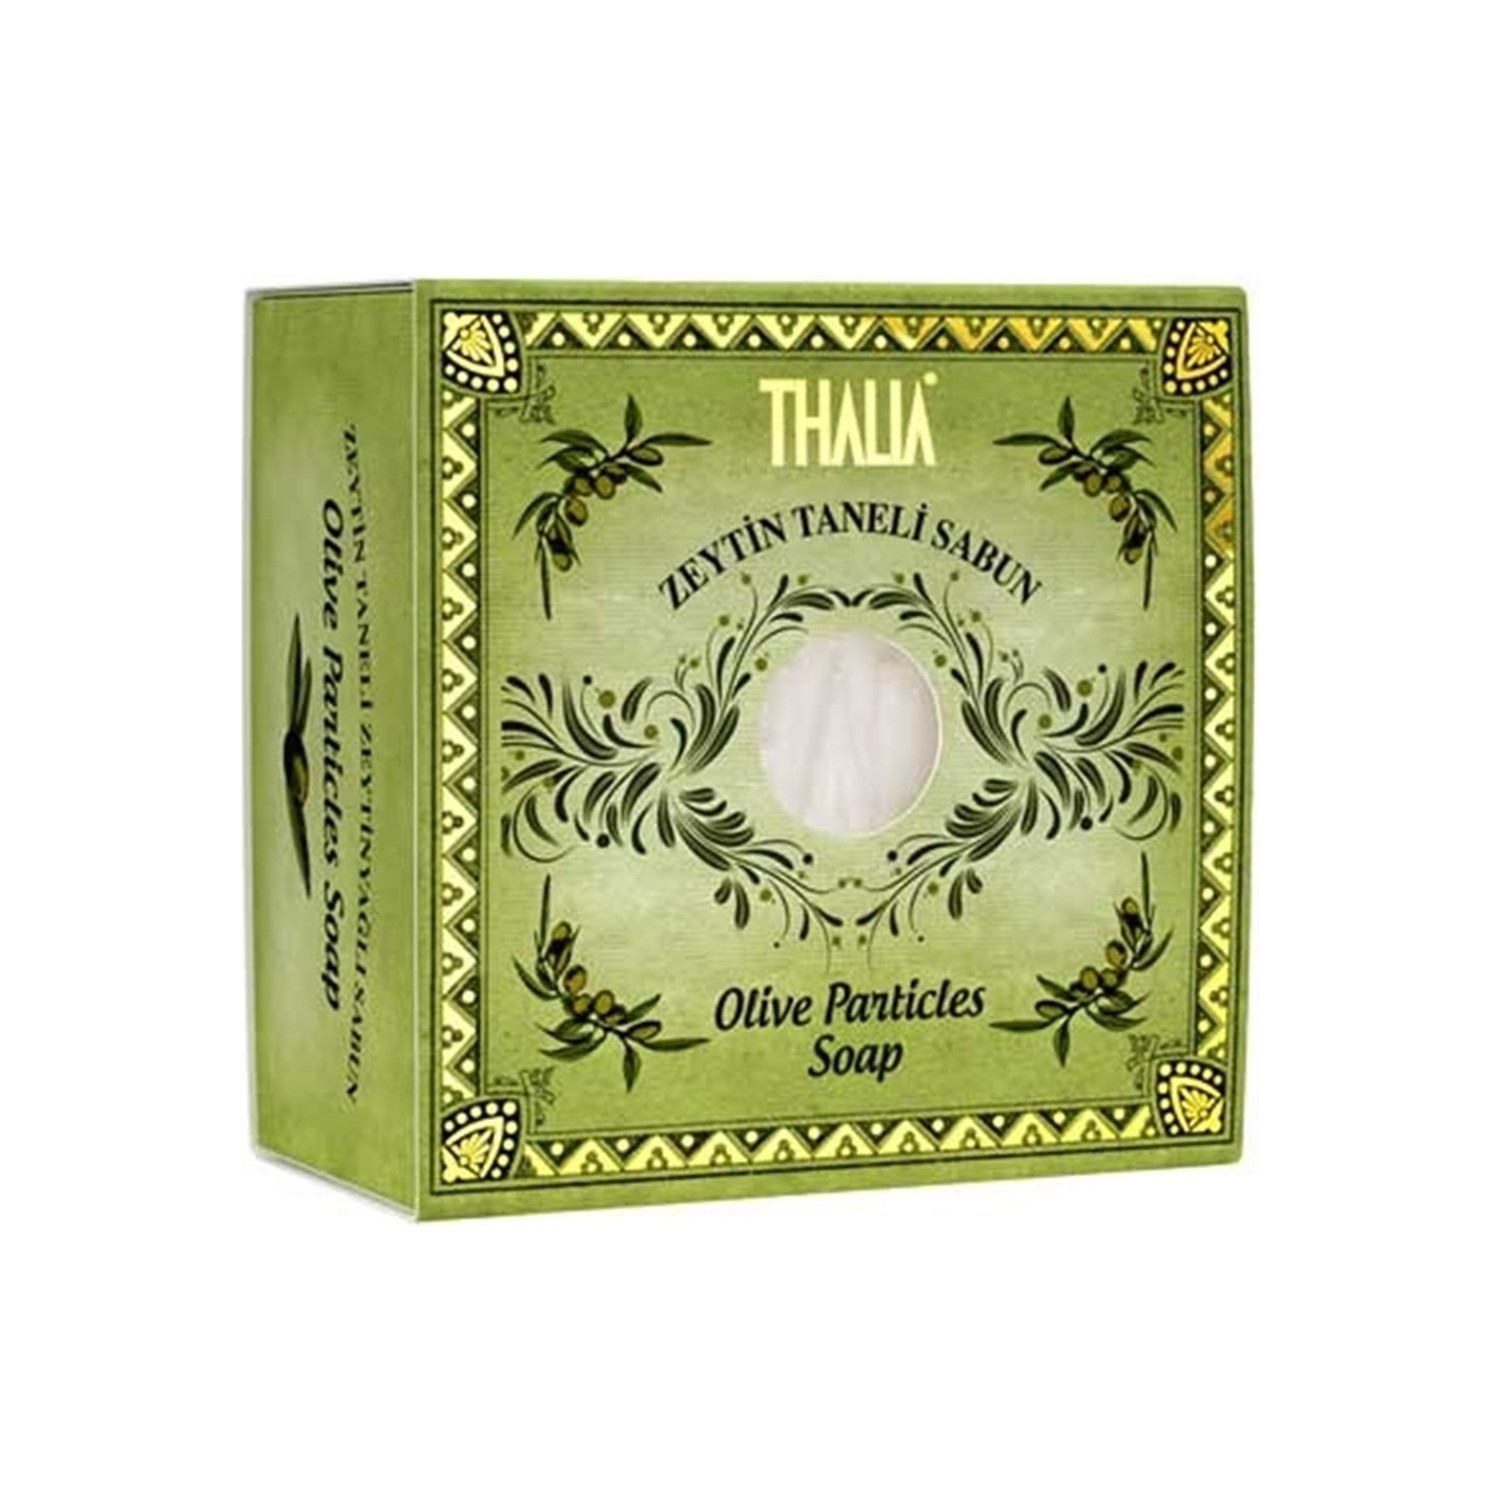 Увлажняющее натуральное мыло Thalia с зернами оливы увлажняющая маска для ухода за волосами thalia с оливковым маслом 175 мл